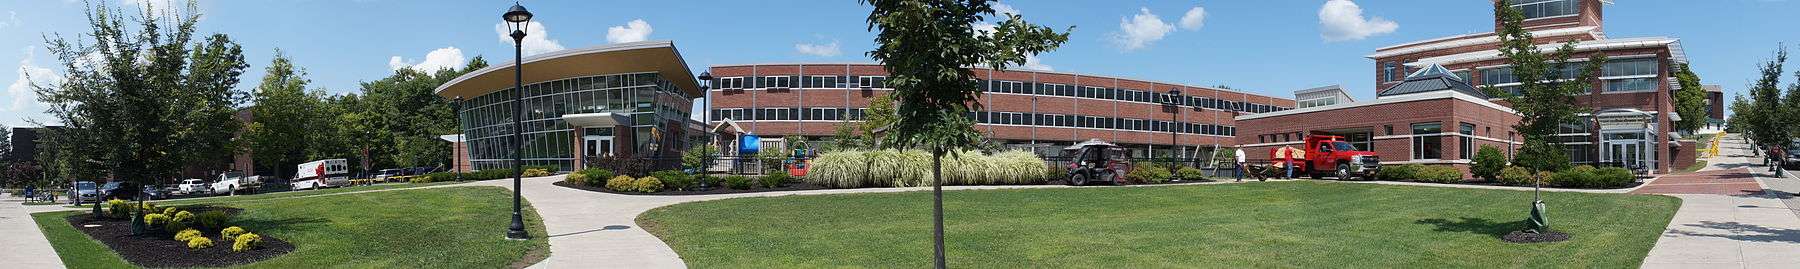 Cortland University campus